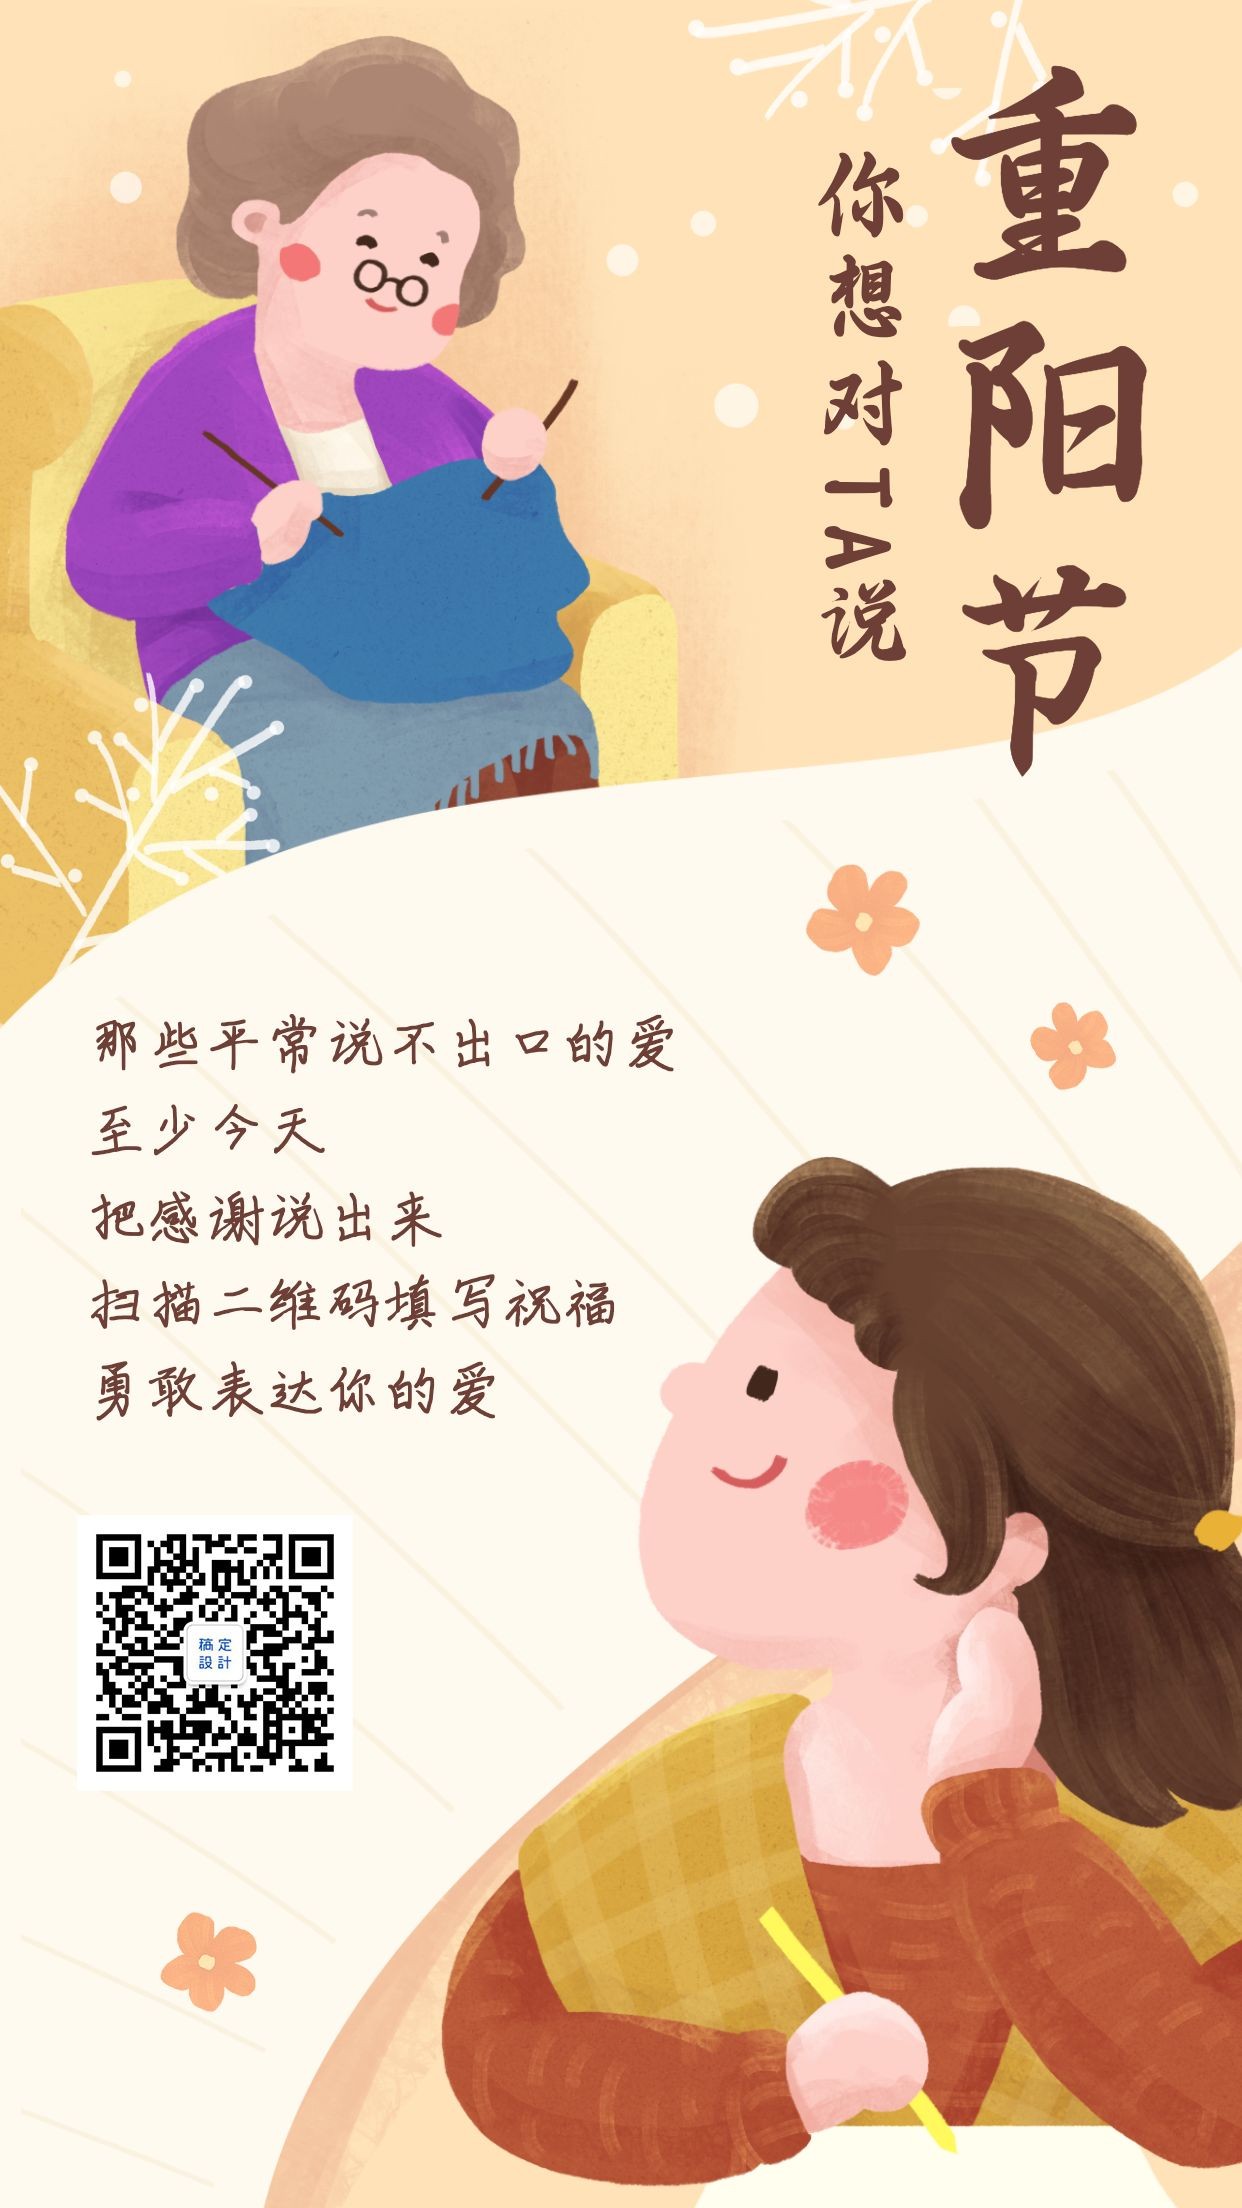 重阳节老人节祝福创意手绘插画温馨手机海报预览效果